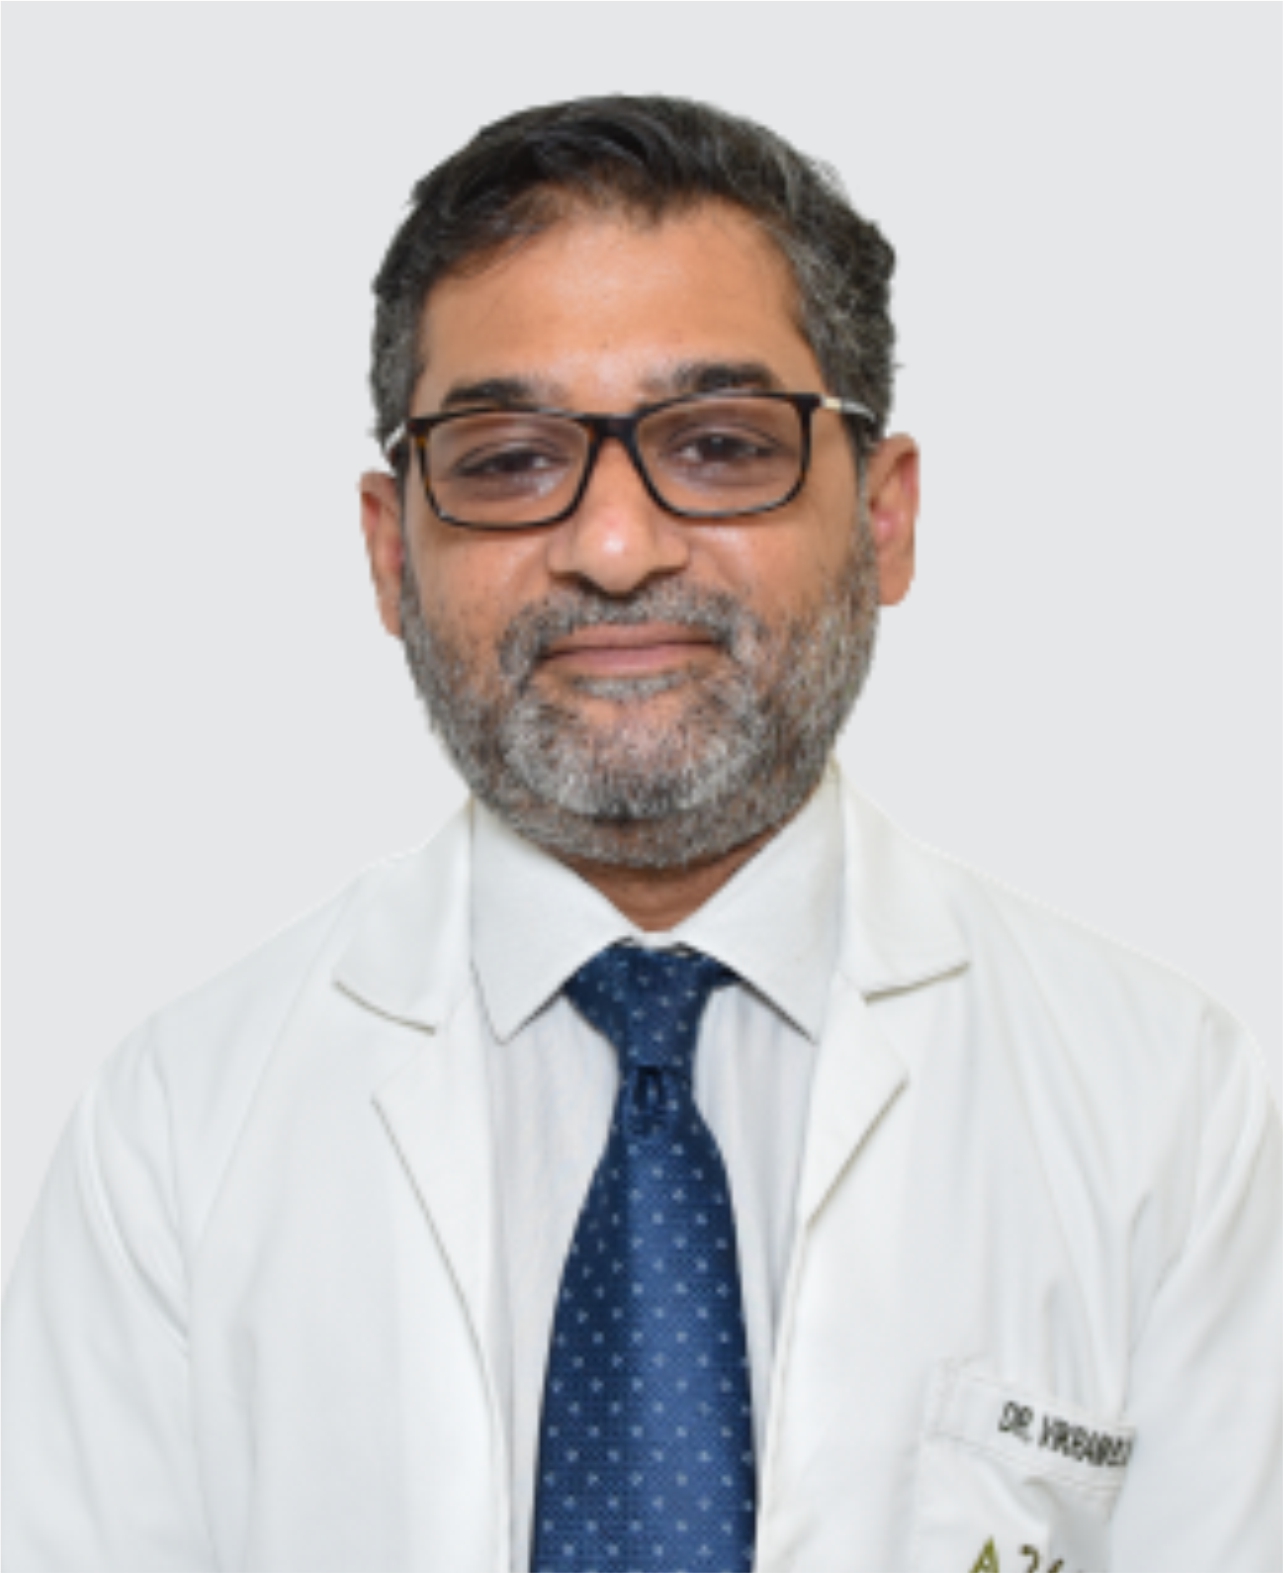 Image of Dr. Vikram Barua Kaushik, urologist in India